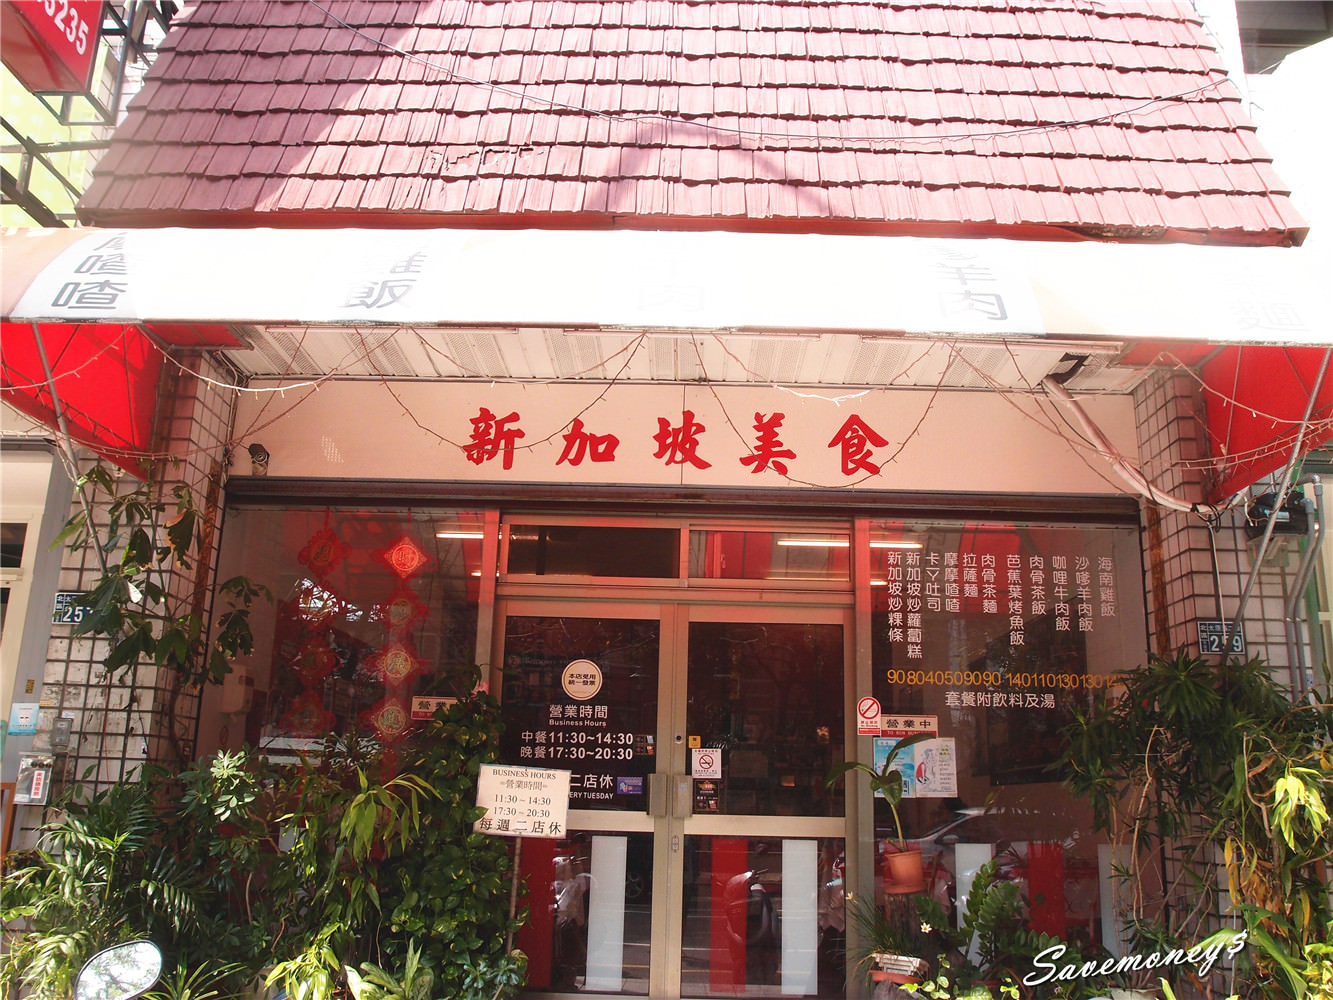 台中美食│太原路新加坡美食,輕鬆品嚐南洋風肉骨茶,拉薩麵